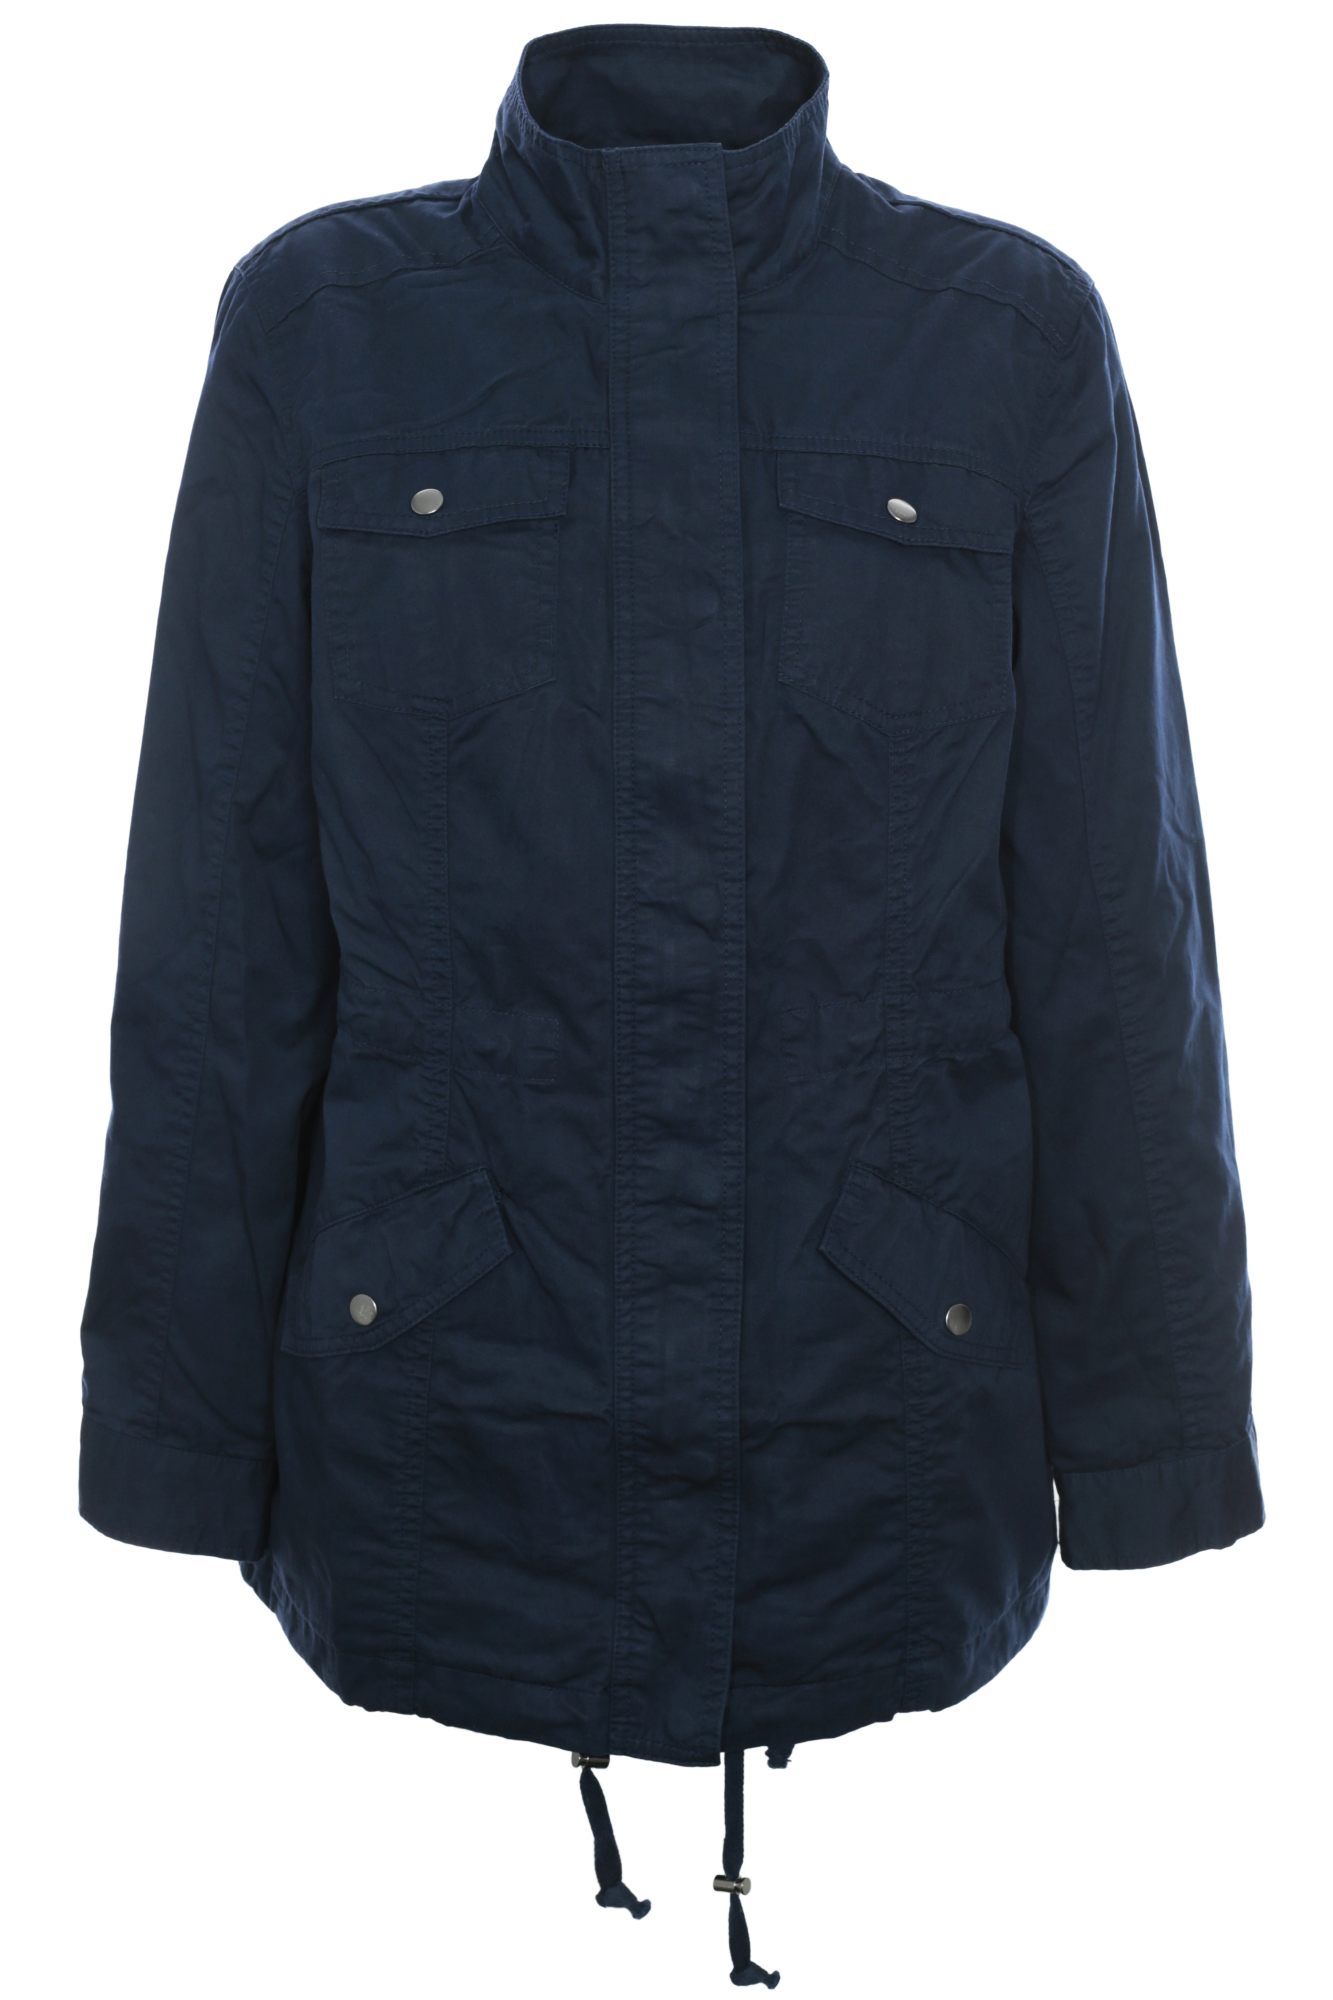 Sheego jacket anorak coat parka jacket navy dark blue women plus size ...